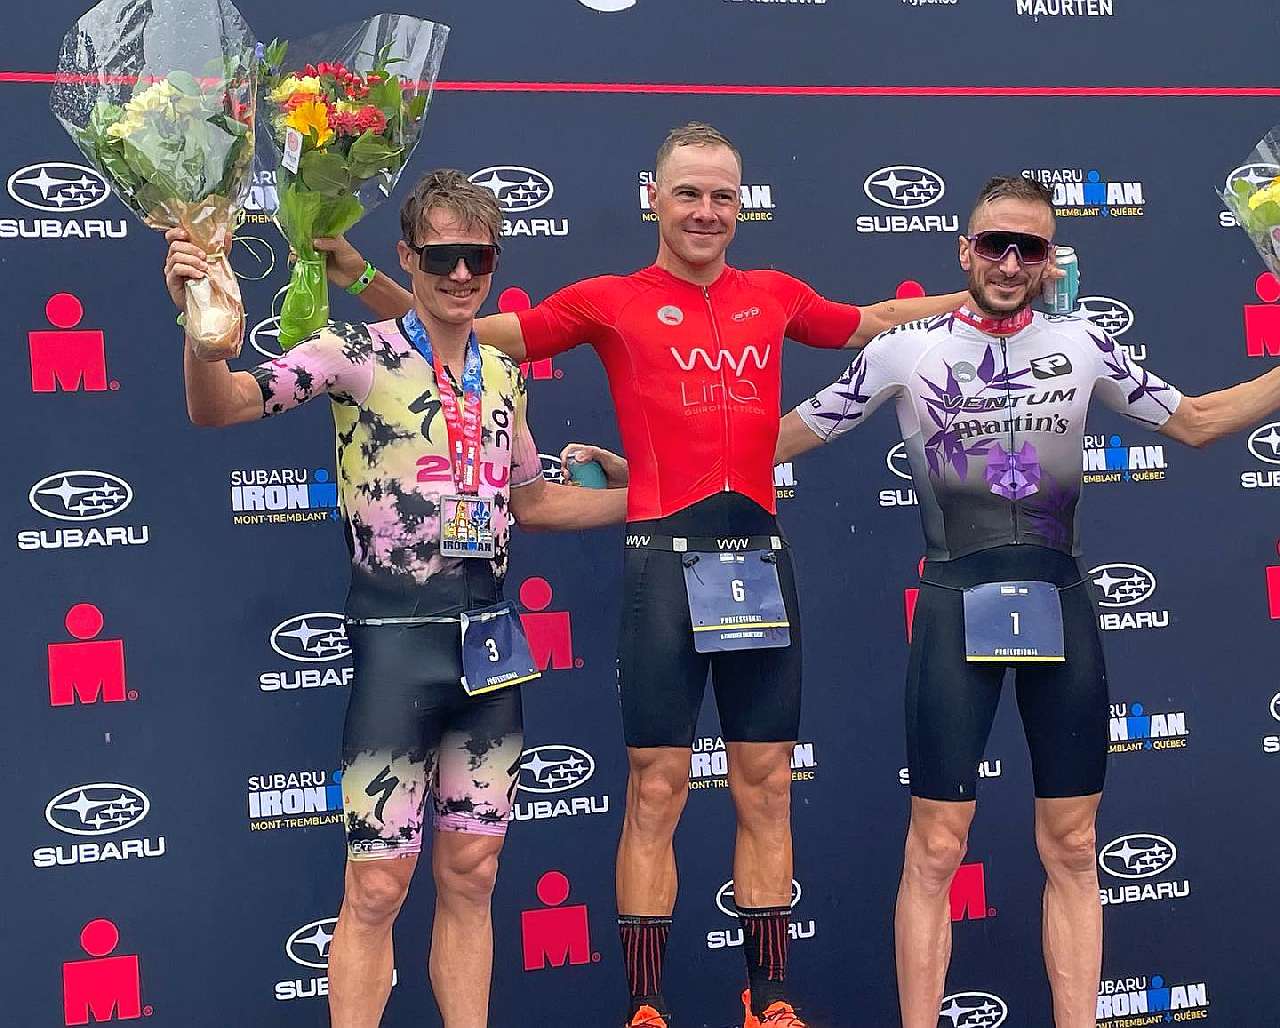 Il podio maschile dell'Ironman Mont-Tremblant 2022 vinto da Collin Chartier